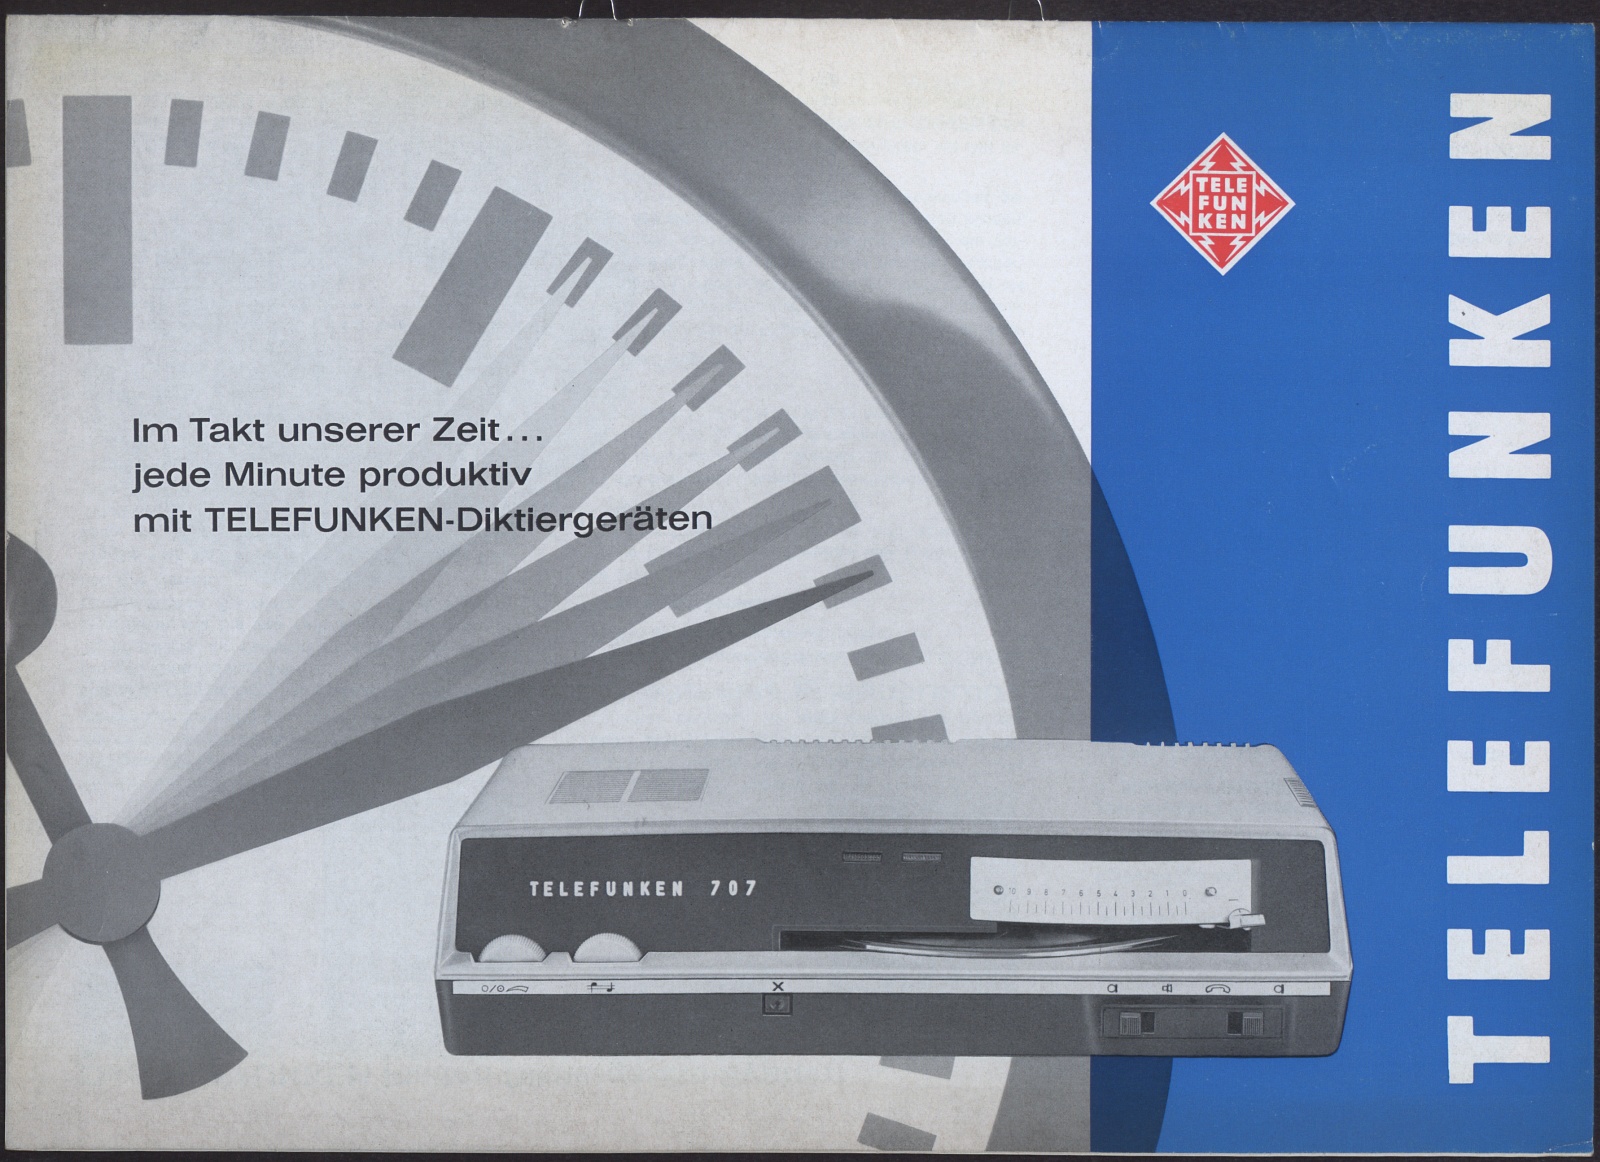 Werbeprospekt: Im Takt unserer Zeit ... ; jede Minute produktiv mit TELEFUNKEN-Diktiergeräten (Stiftung Deutsches Technikmuseum Berlin CC0)